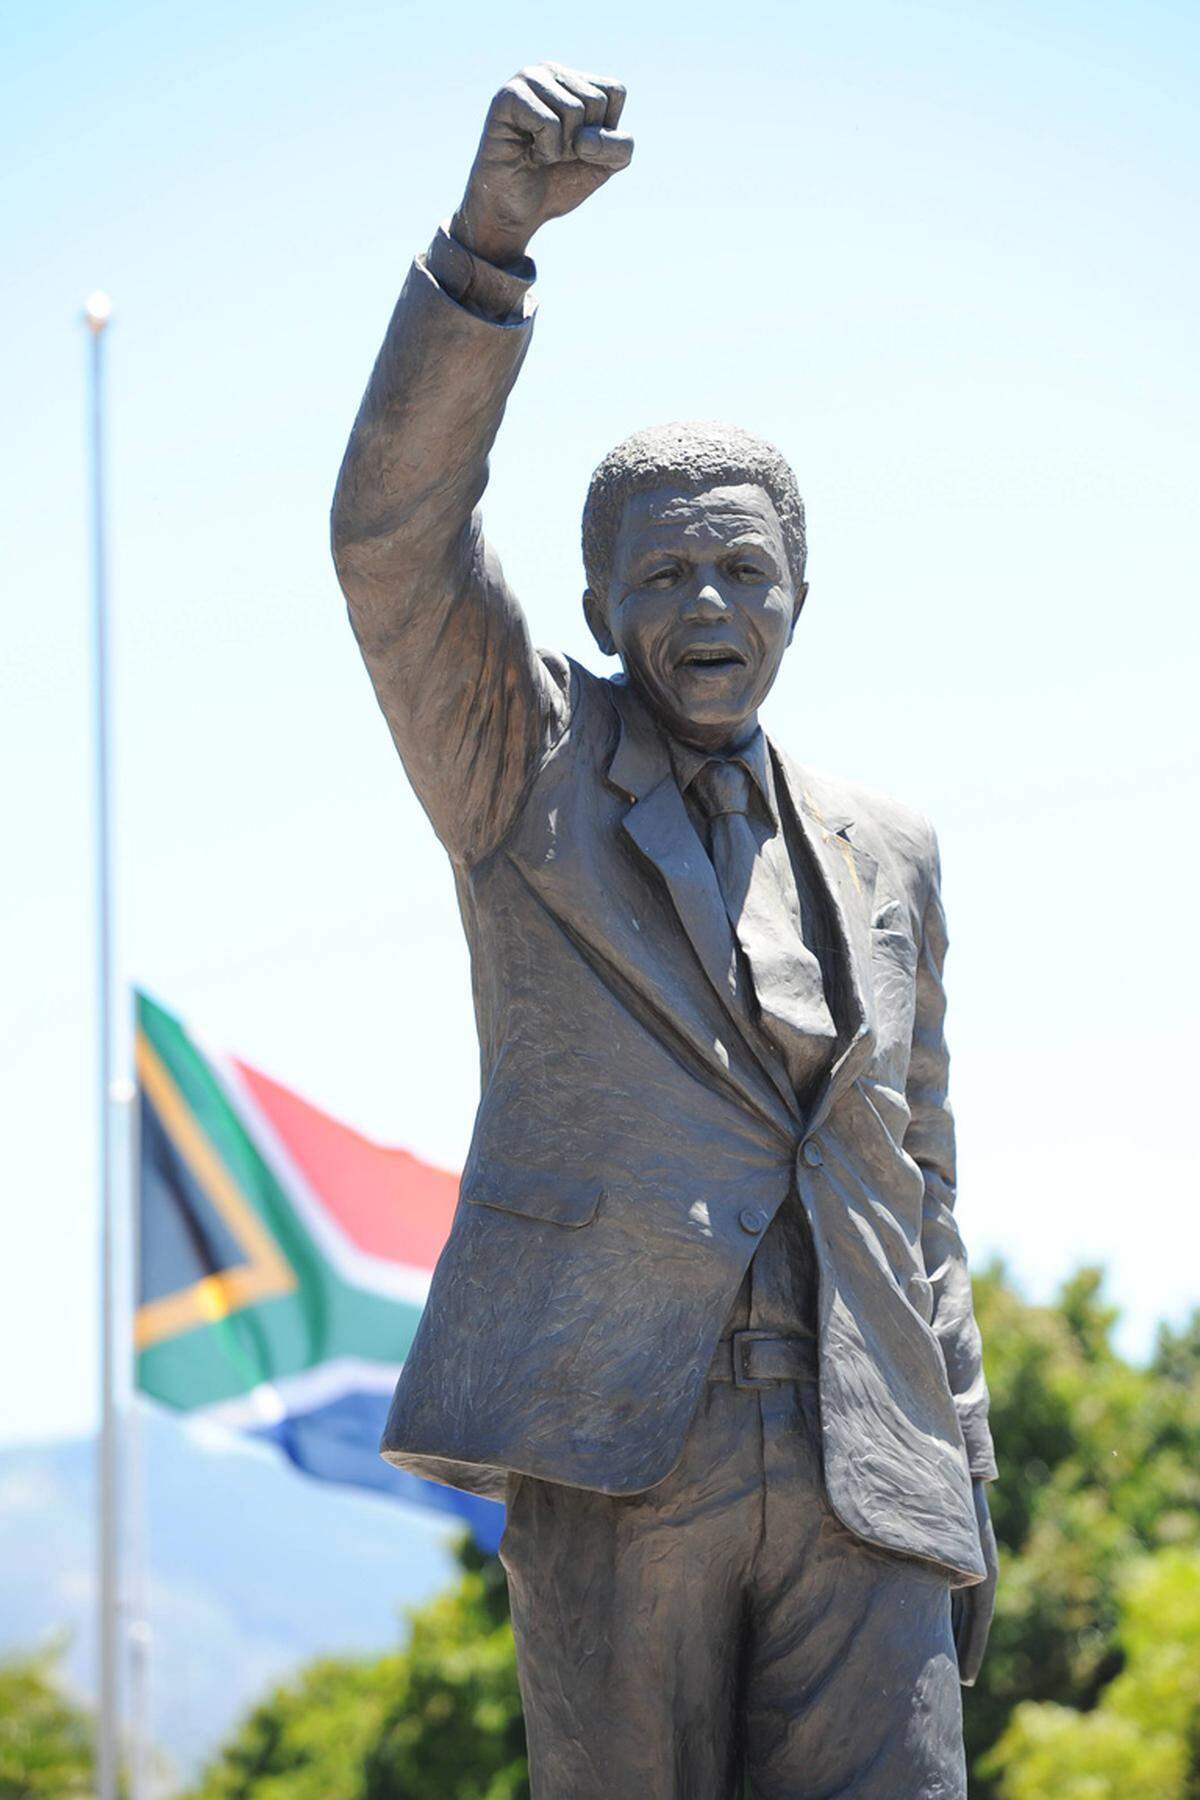 Nelson Mandela verbringt 27 Jahre seines Lebens als politischer Gefangener in Haft, weil er zu Massenprotesten für „ein nicht-rassistisches, geeintes und demokratisches Südafrika", einem Stimmrecht für alle und die Massenbildung der Erwachsenen aufrief. Aus dieser Zeit stammt sein Zitat: „Der Kampf ist mein Leben.“ Und der Kampf war erfolgreich: Der Anti-Apartheid-Kämpfer Nelson Mandela tritt am 10. Mai 1994 als erster demokratisch gewählter Schwarzer das Amt des Staatspräsidenten von Südafrika an - und betont: „Jeder Mensch ist dazu bestimmt, zu leuchten!“